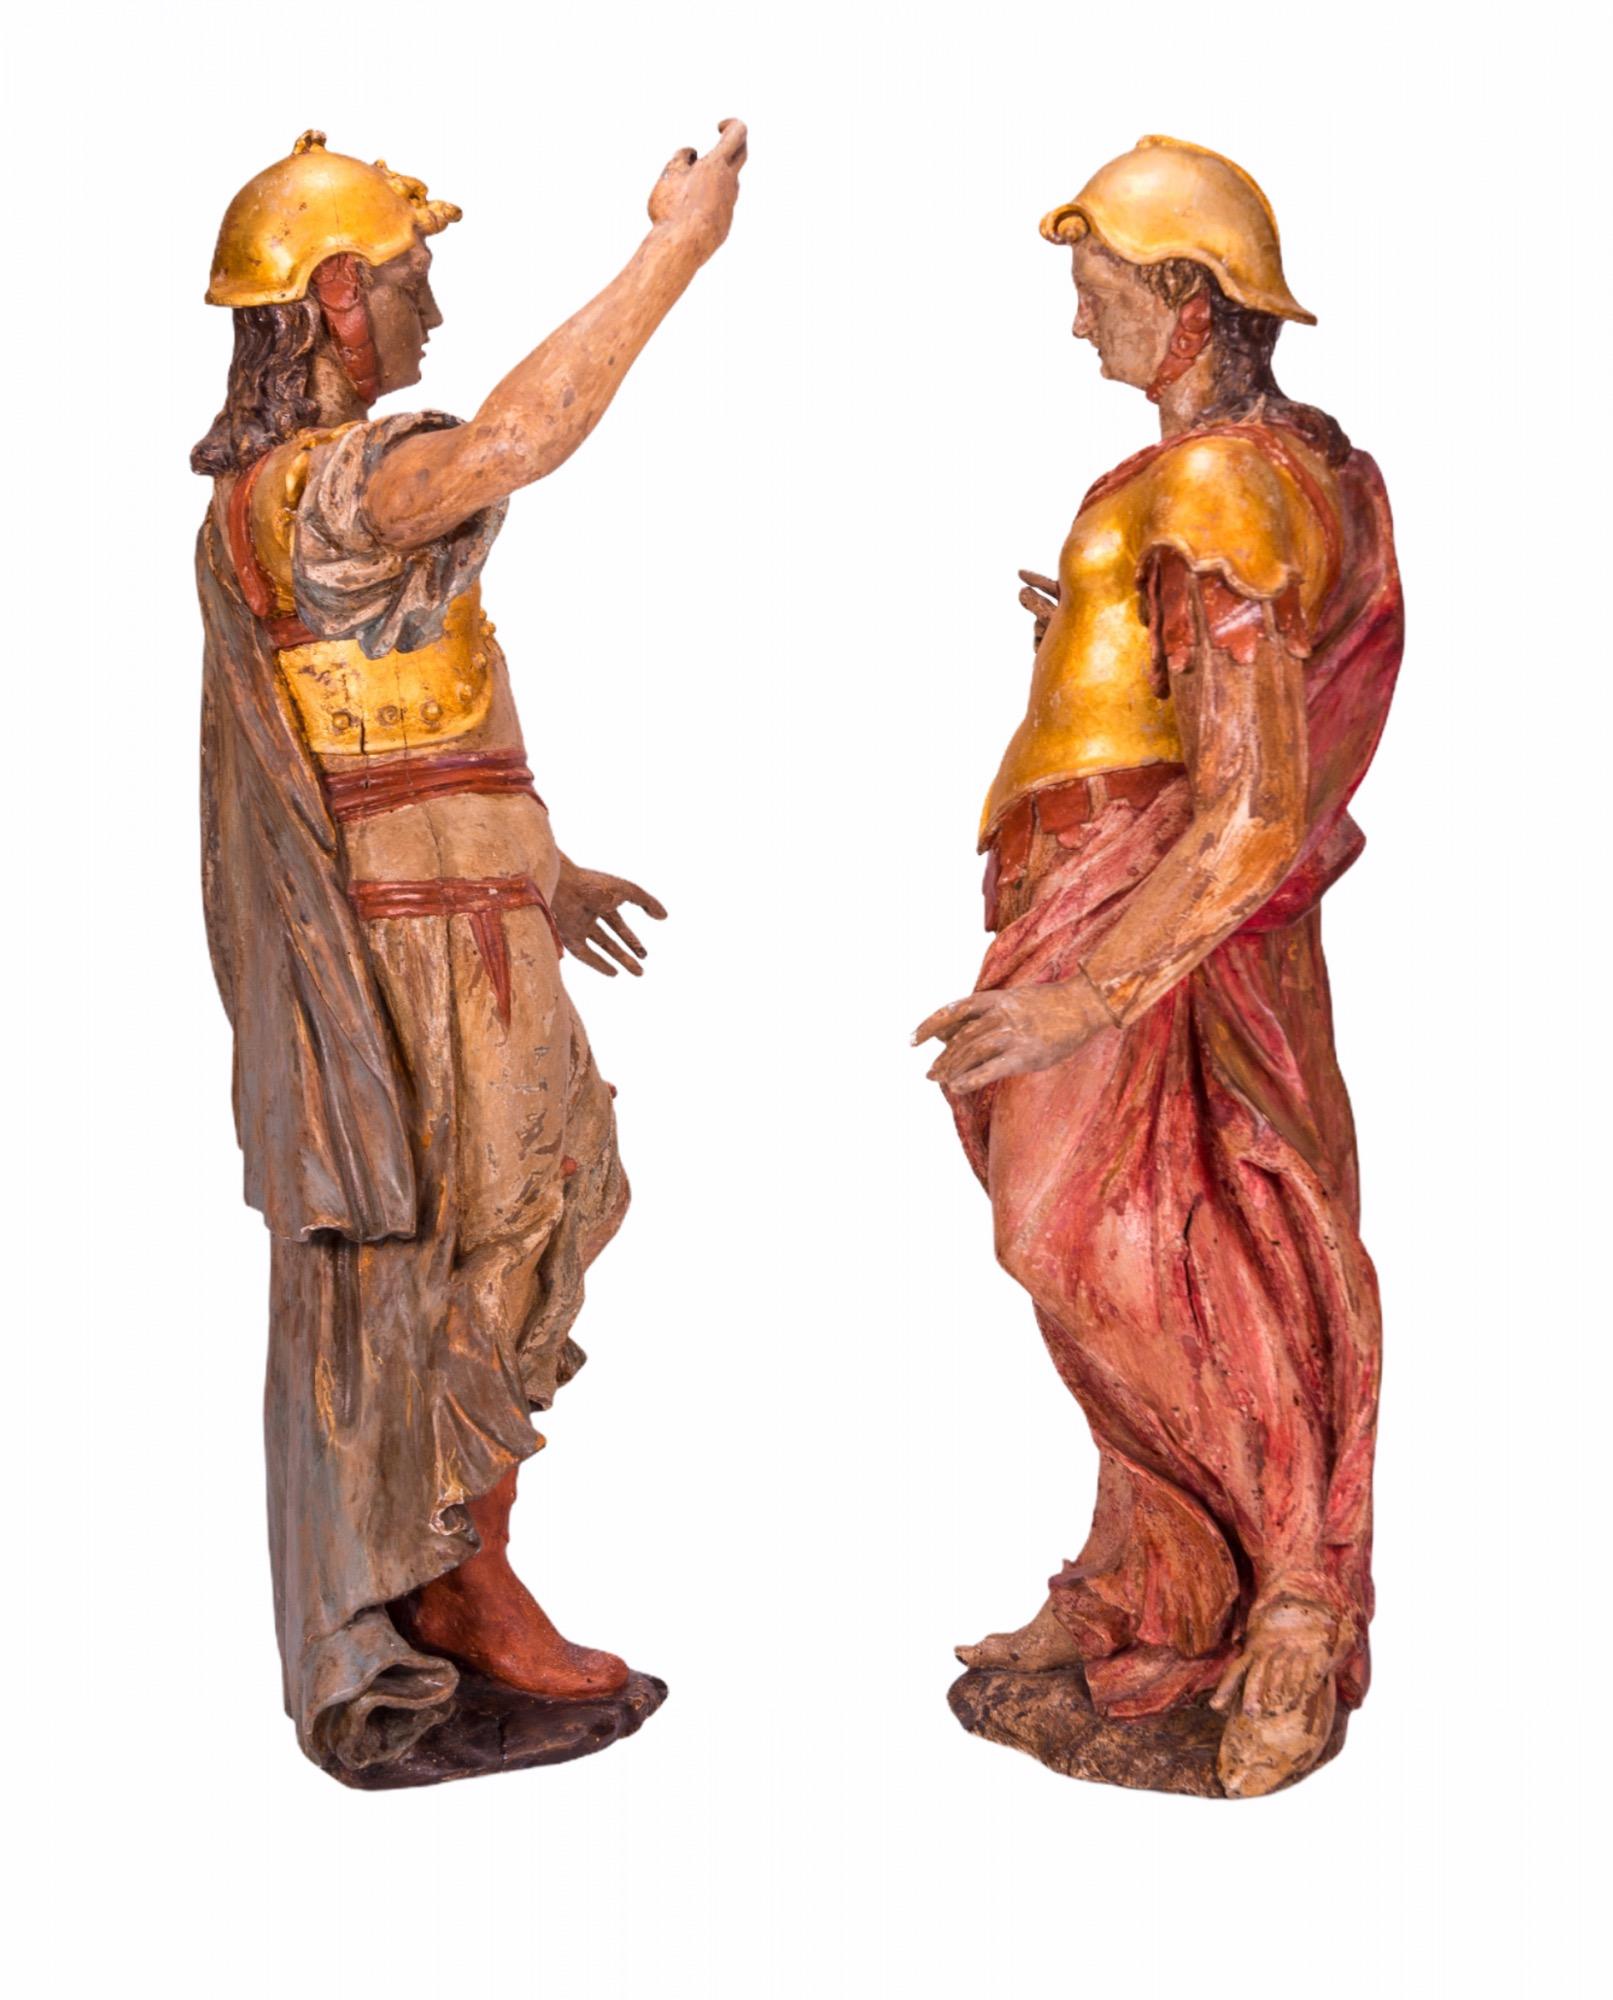 Paire de sculptures d'archanges baroques italiennes de la fin du XVIIe siècle en bois sculpté, dorées et polychromées, montées sur des bases en Lucite.